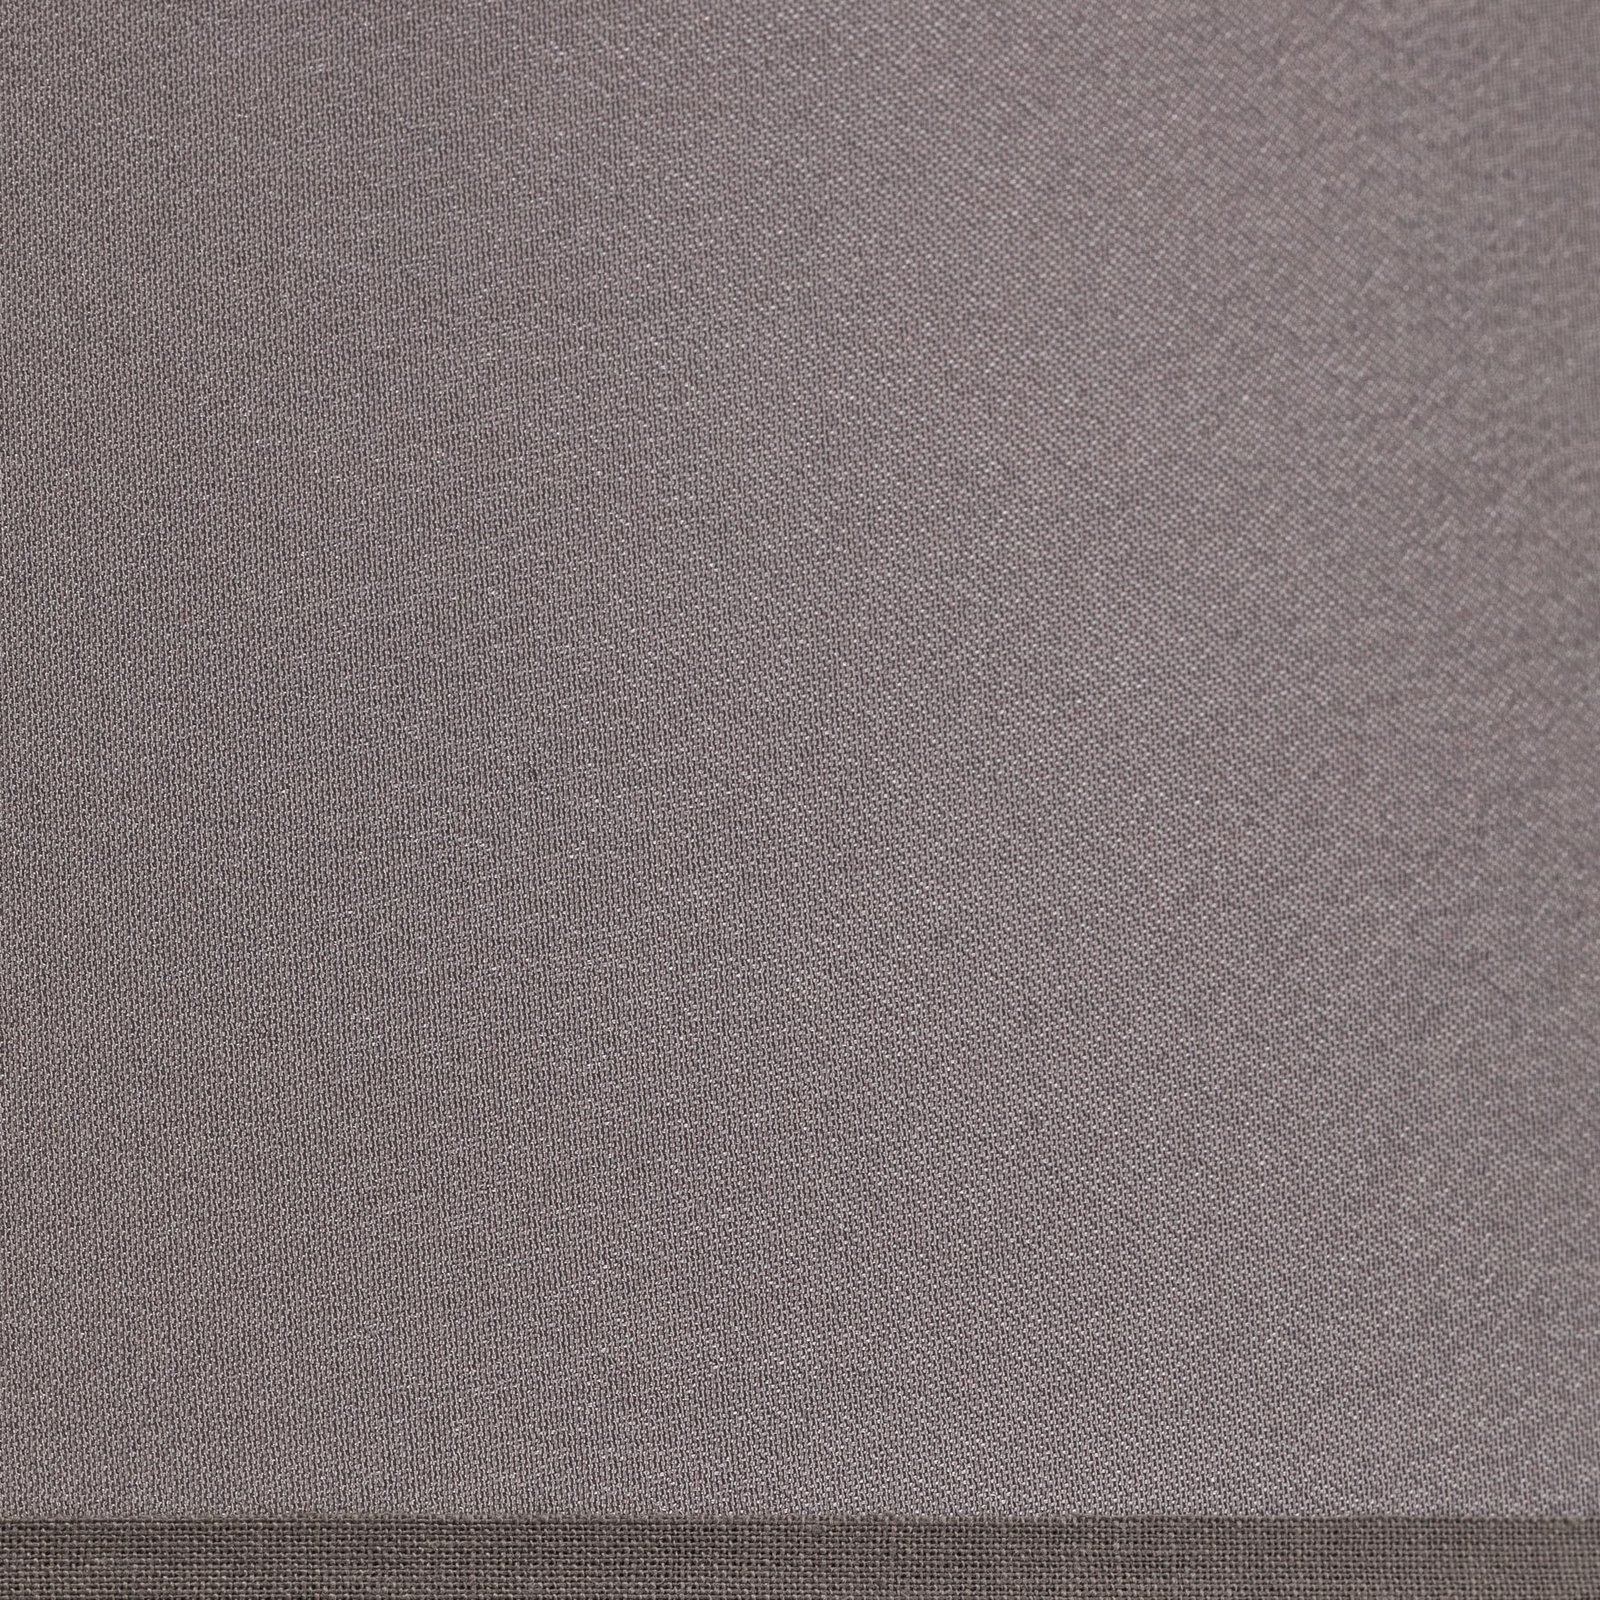 Lampskärm Cone höjd 22,5 cm, chintz grå/vit